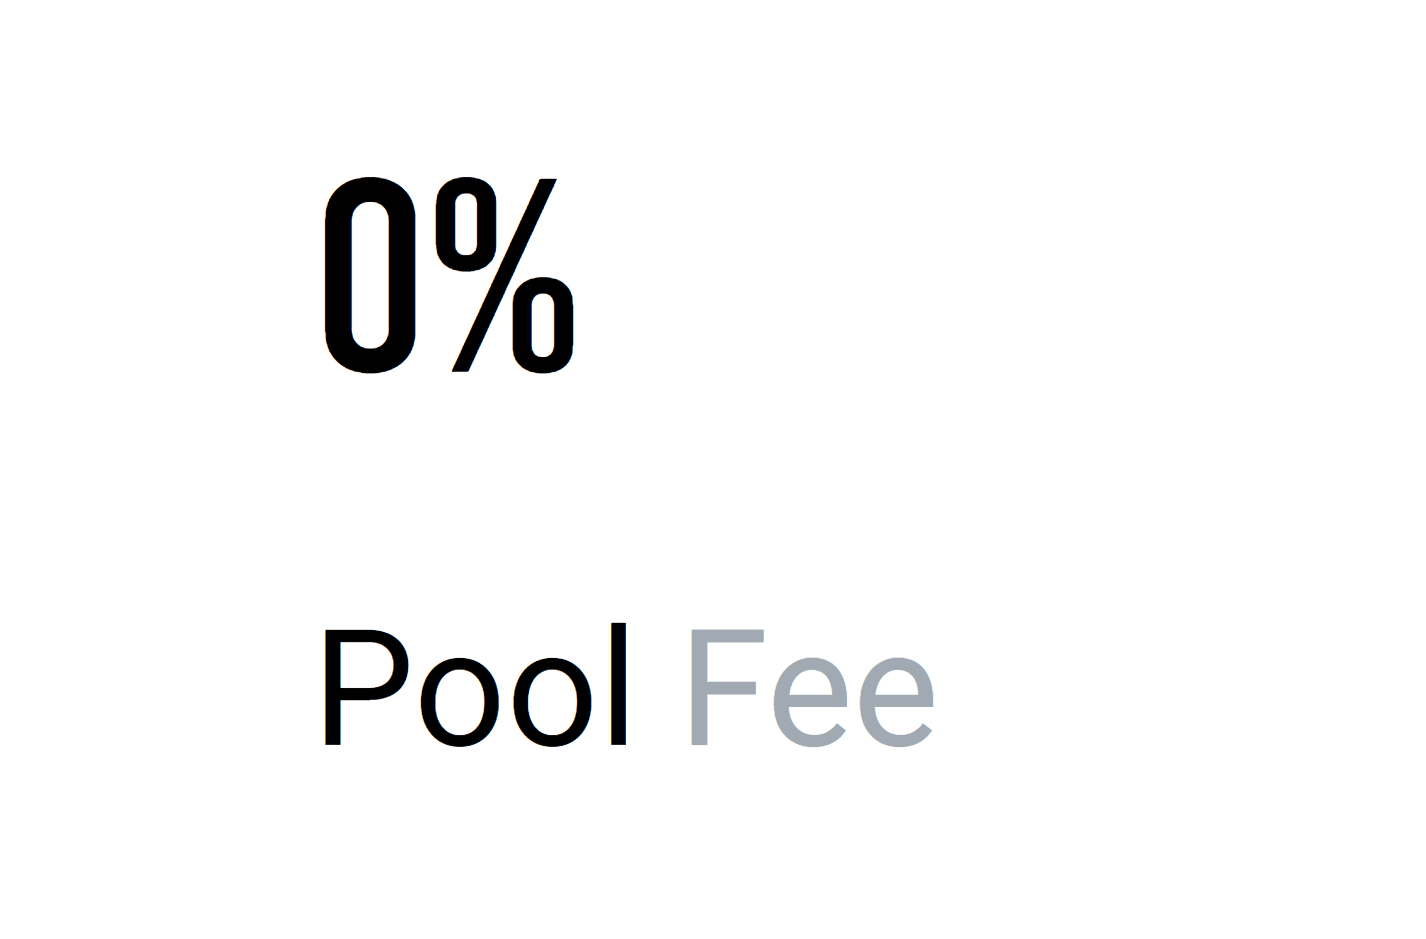 No fees for Firo